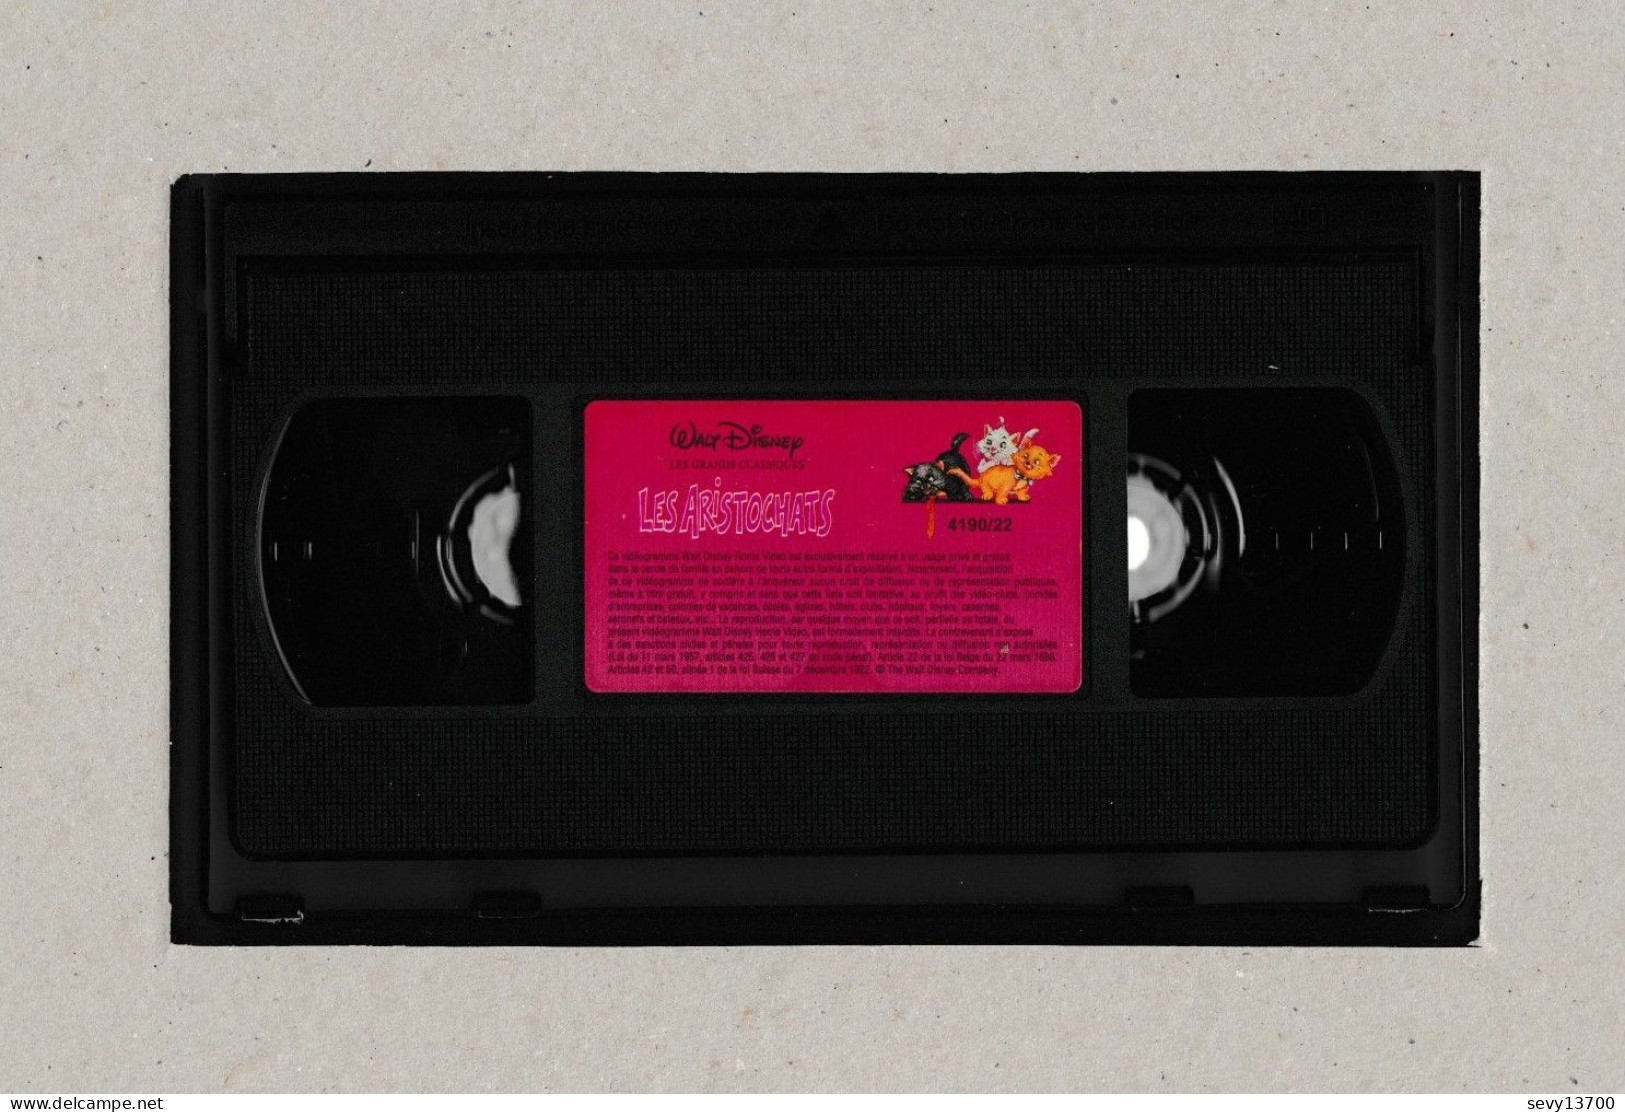 3 Cassettes VHS Walt Disney Les Aristochats - Les 101 Dalmatiens Et Rox Et Rouky - Cartoni Animati